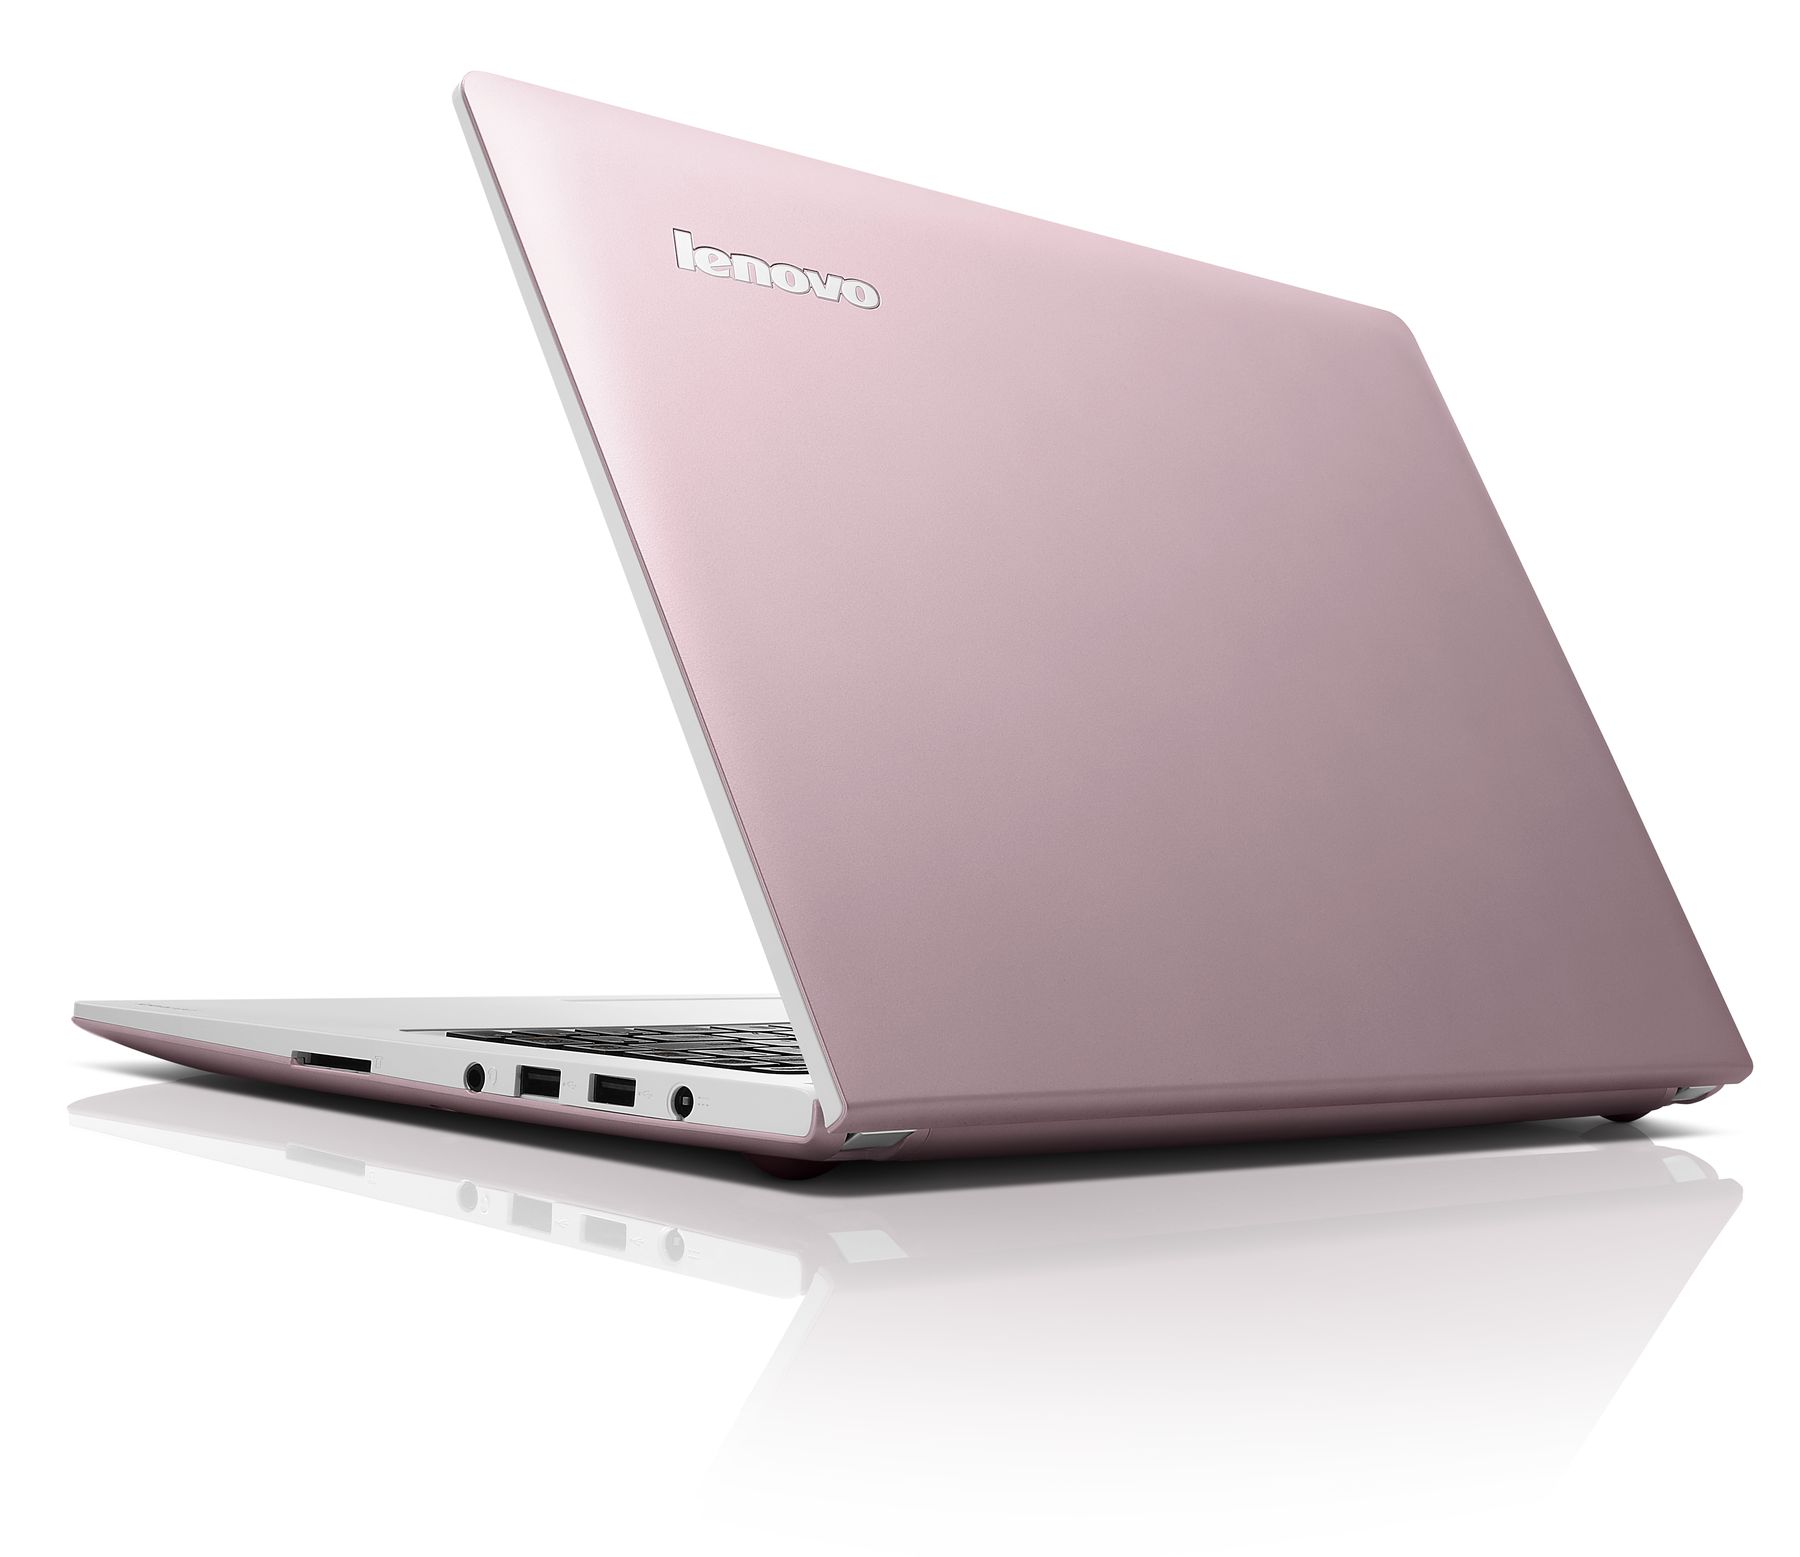 Lenovo IdeaPad S300: Notebook Slim dengan Harga Bersahabat 